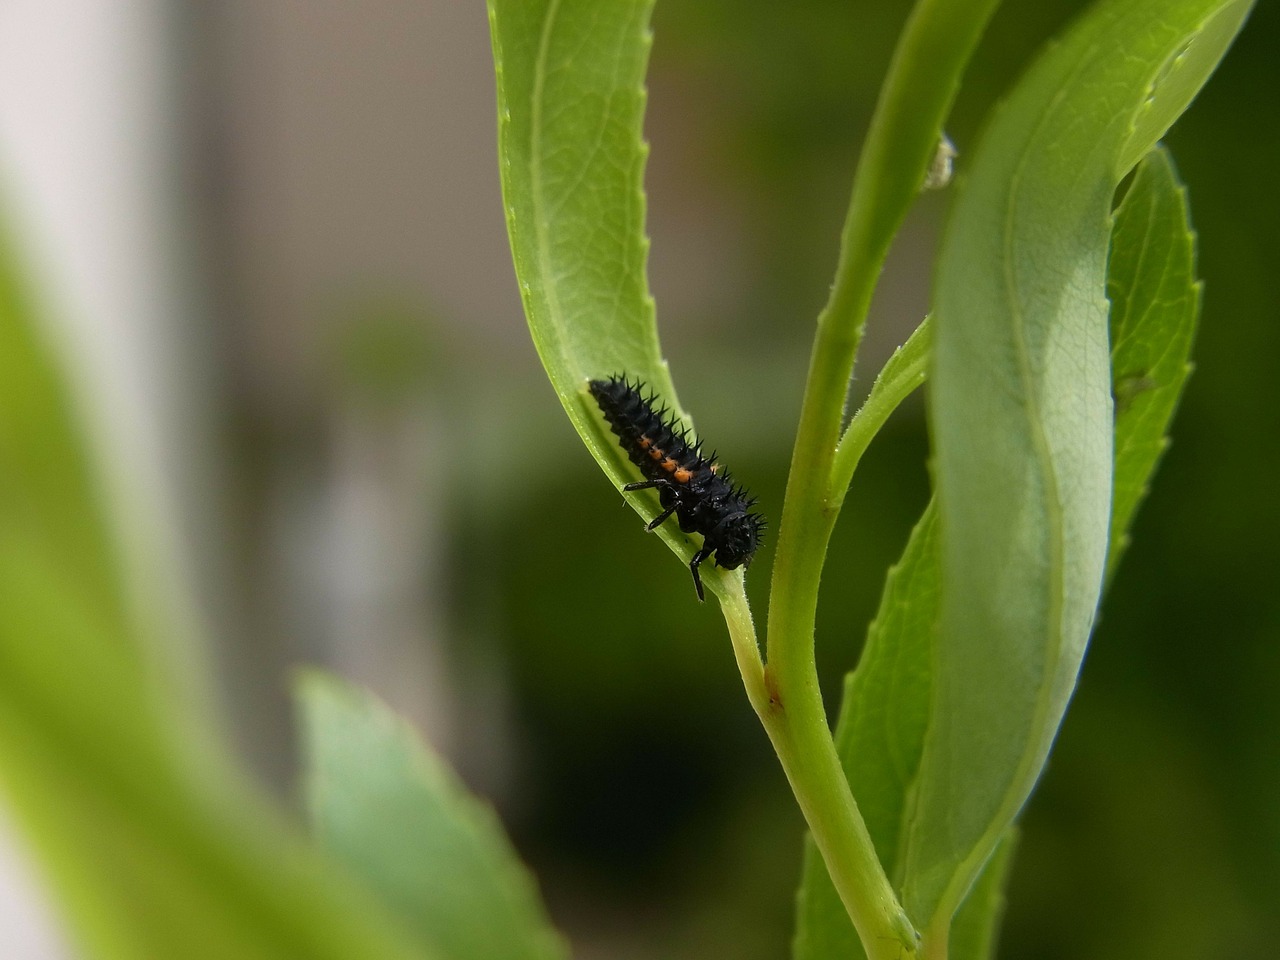 marienkäfer larva ladybug beetle free photo